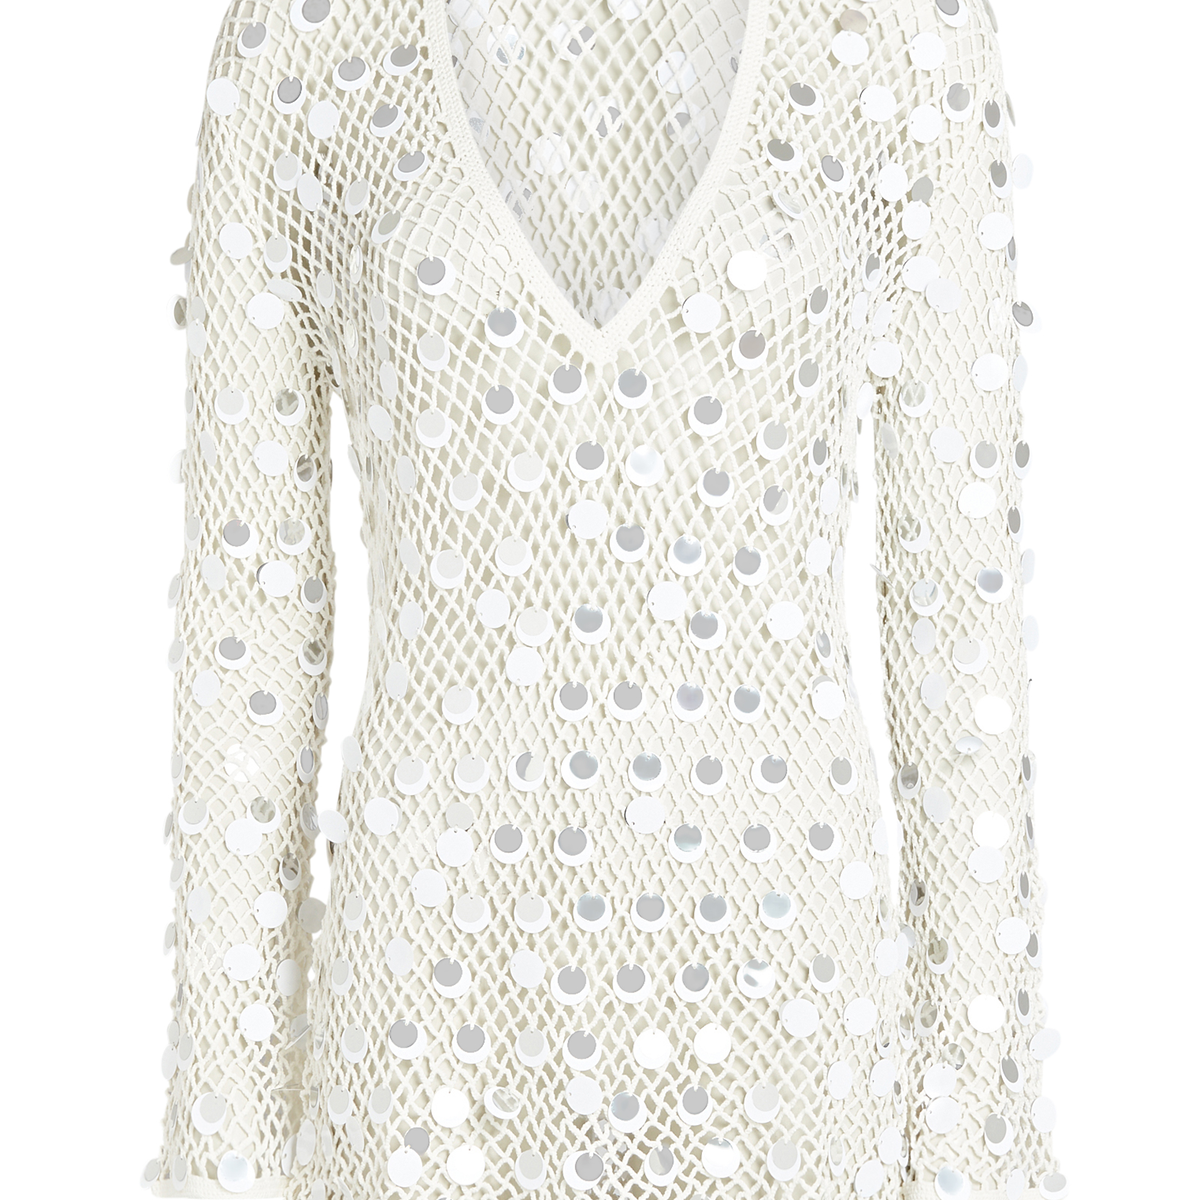 Caroline Constas Sequined Crochet Cover-Up Dress | INTERMIX®